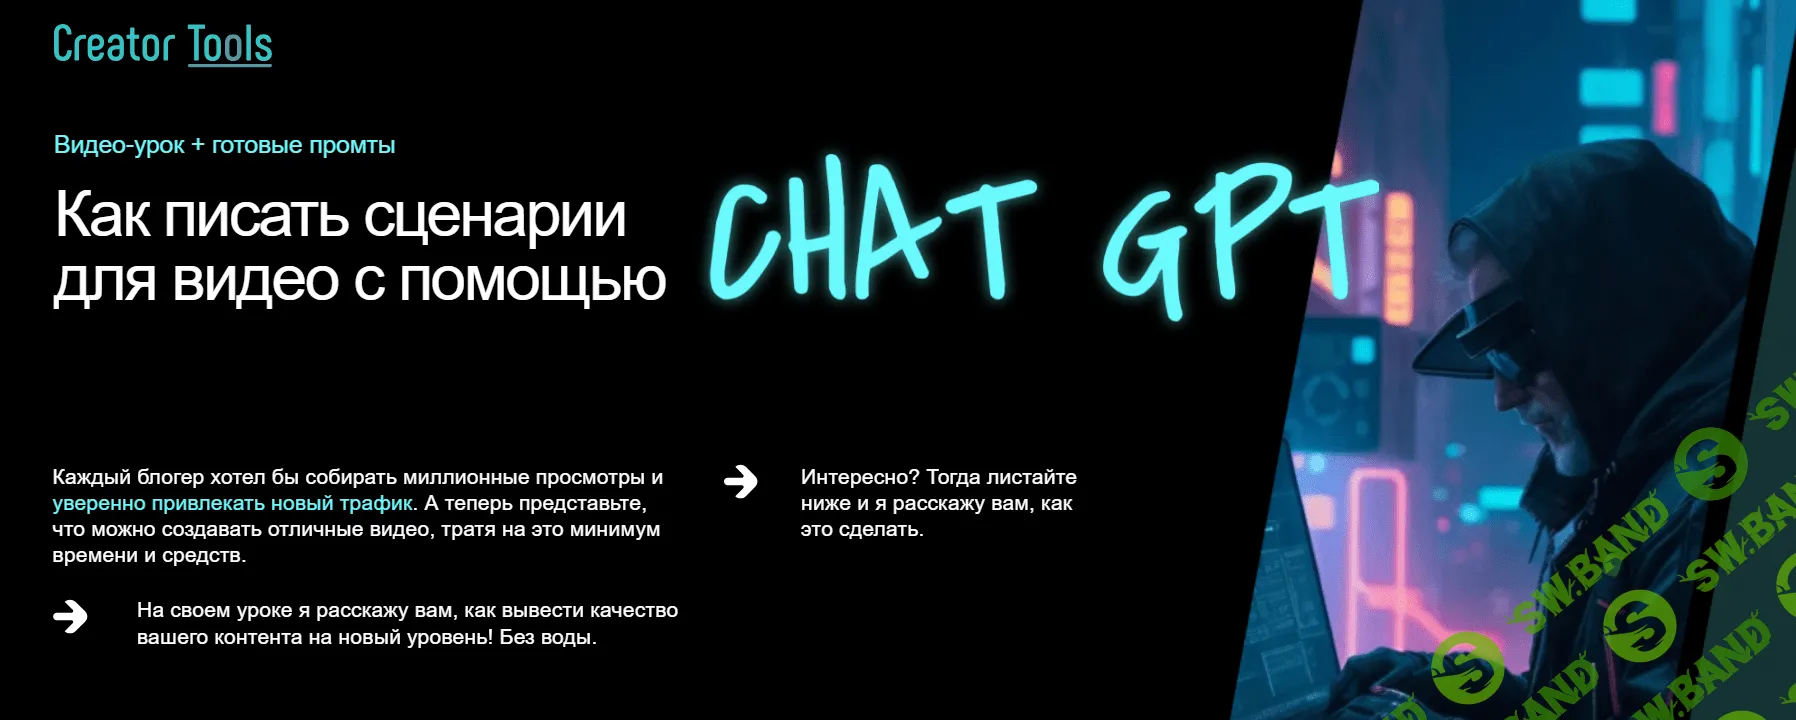 [Игорь Рубанович] Как писать сценарии для видео с помощью ChatGPT (2023)